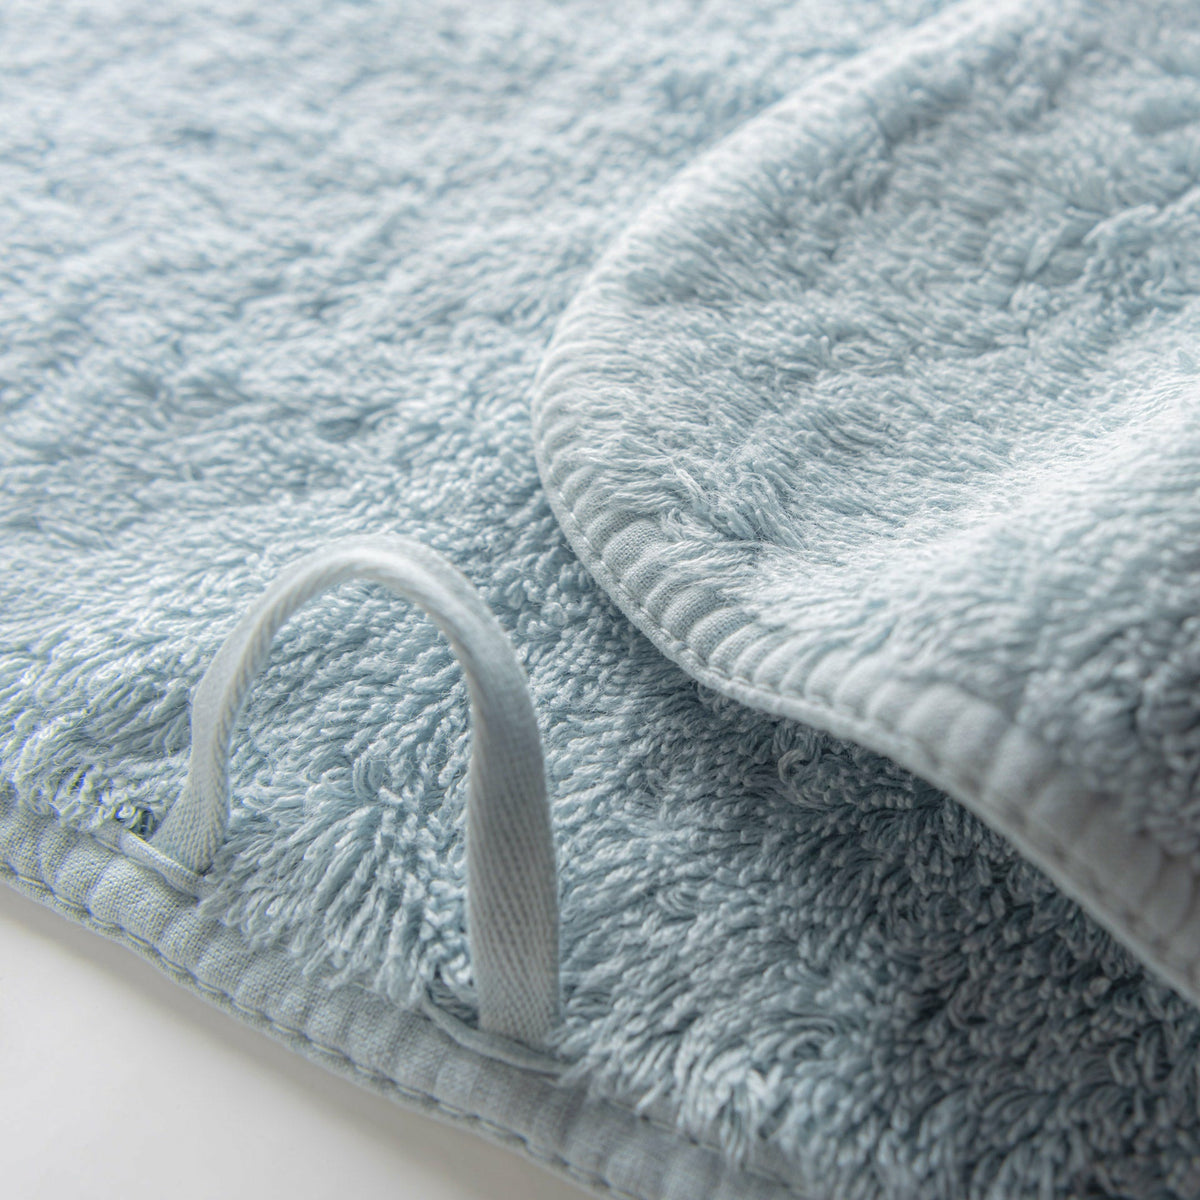 Graccioza Long Double Loop Bath Towels Close Up Sea Mist Fine Linens